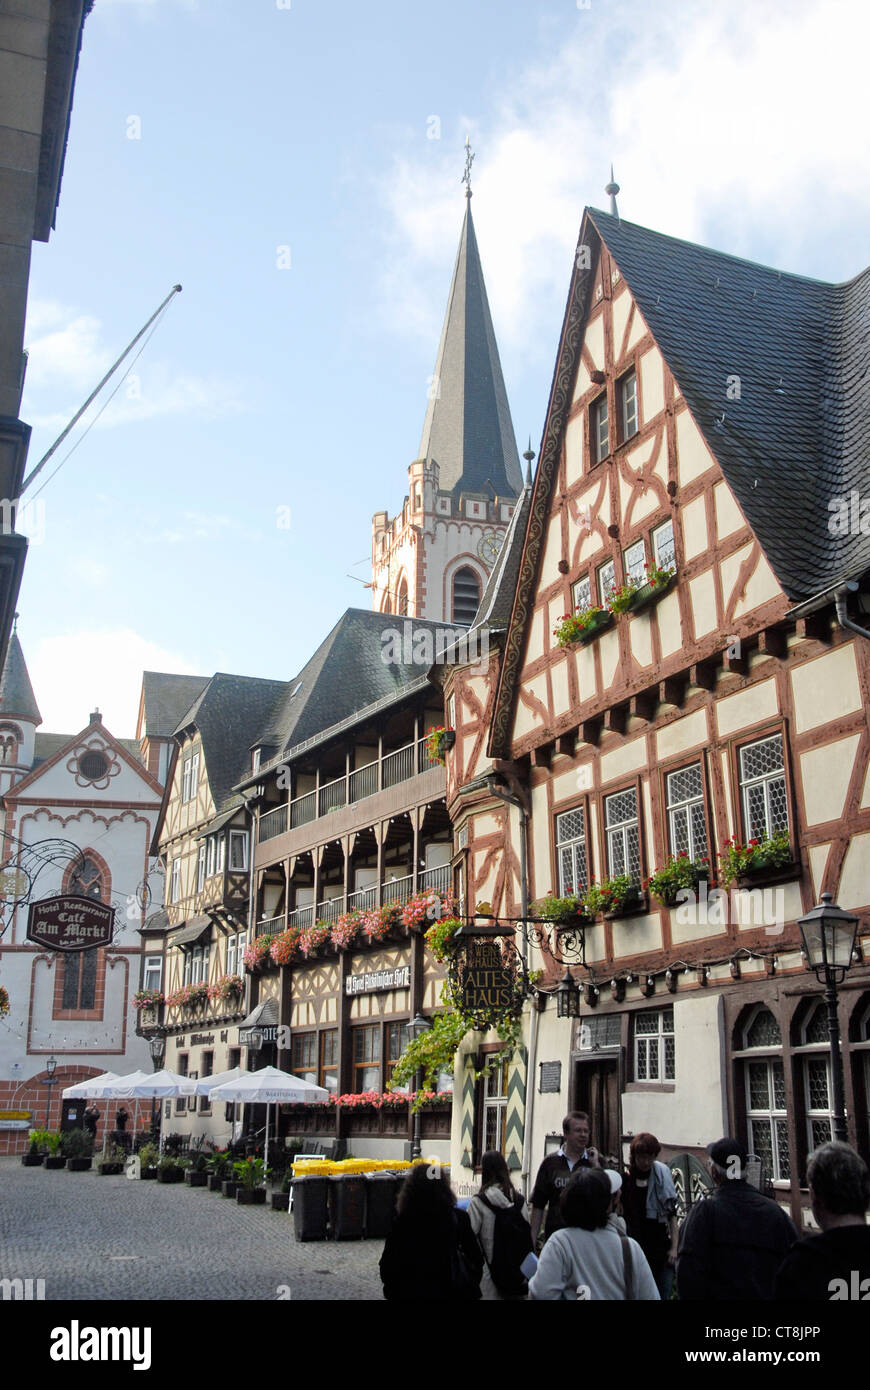 La ville de Bacharach dans la gorge de la rivière du Rhin, Allemagne Banque D'Images